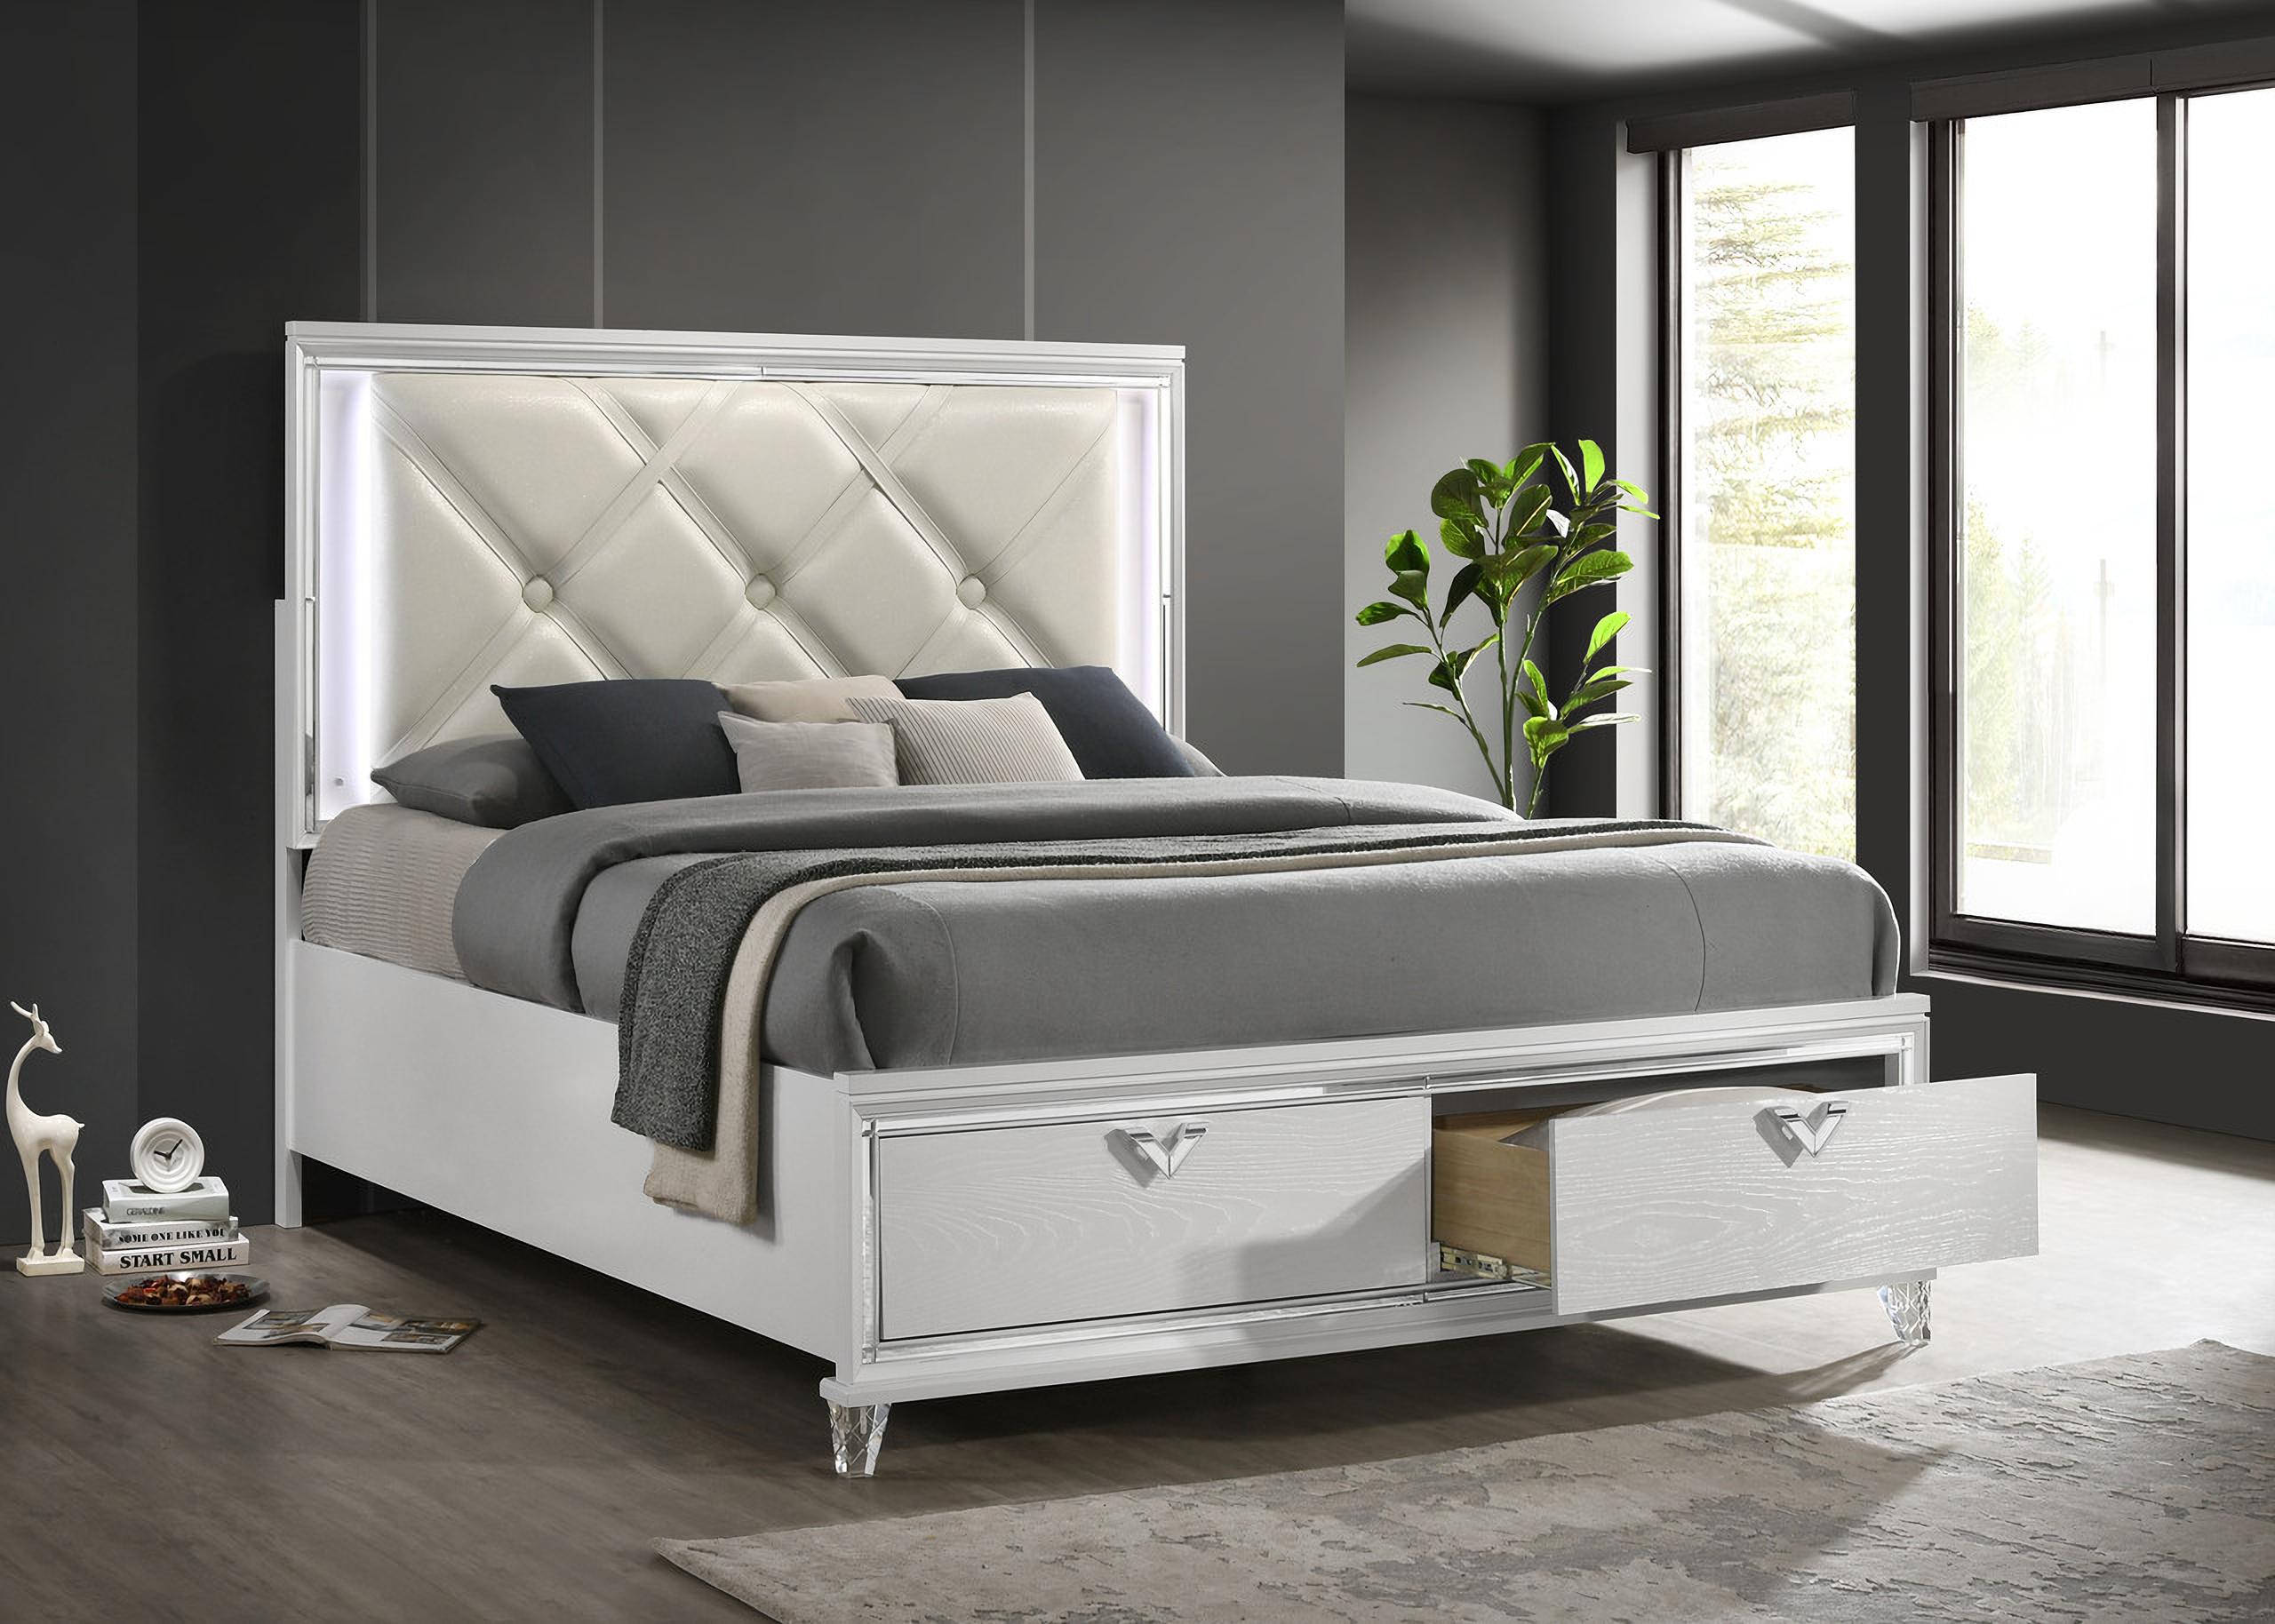 

    
Prism-EK-NDMC-5PC Galaxy Home Furniture Storage Bedroom Set
